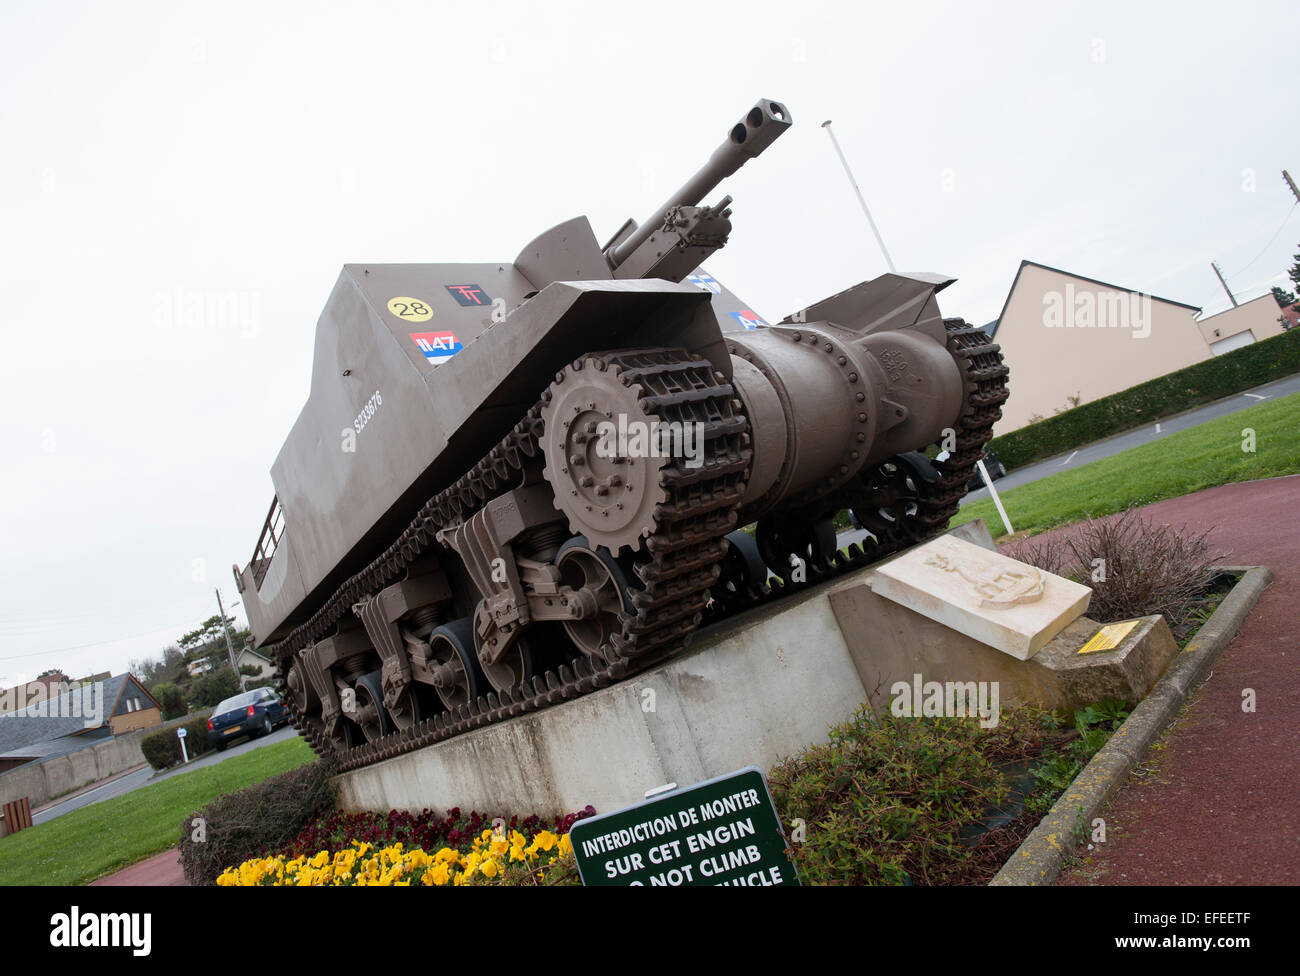 Canon automoteur Sexton du 86e Régiment de campagne, Artillerie royale un monument du Jour J en Normandie, France Banque D'Images